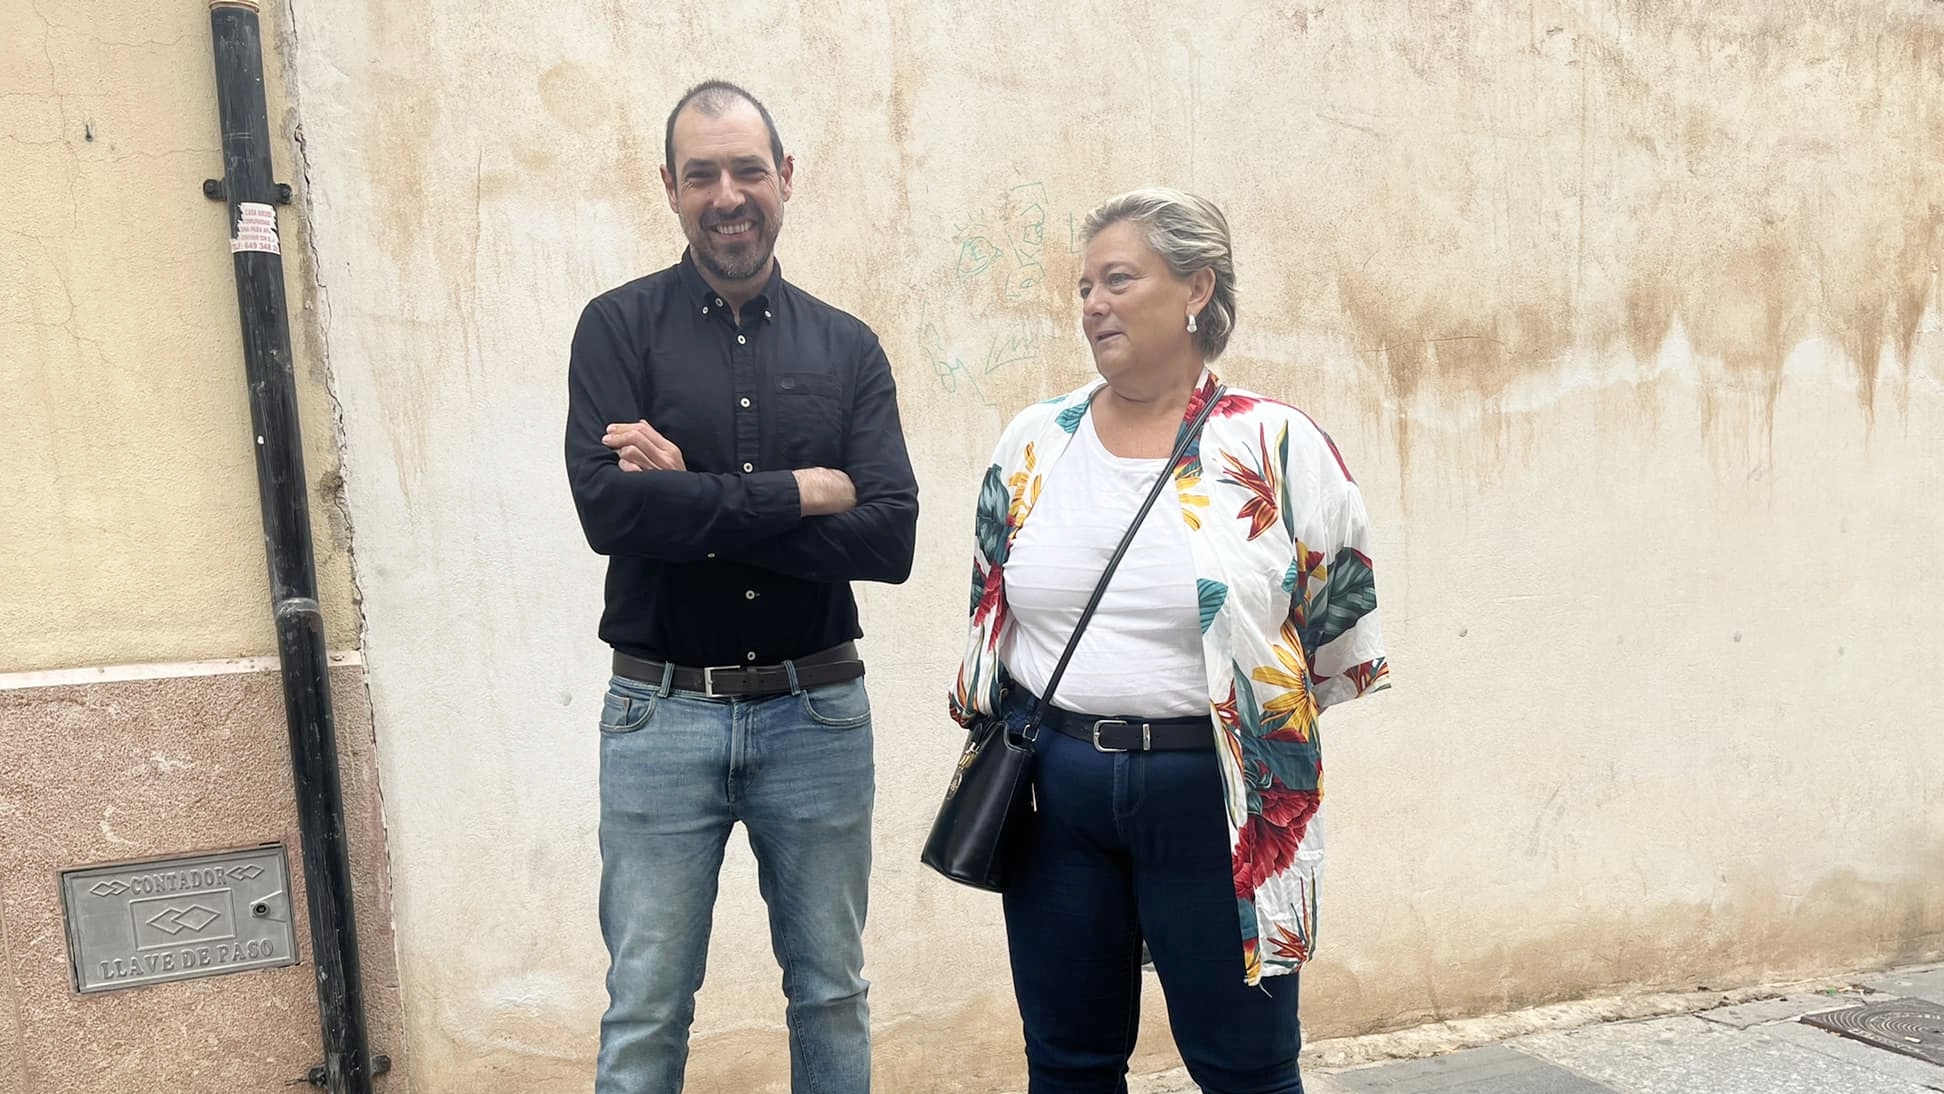 Fran Matas y Pilar Ruiz concejales de IU en Antequera, junto a uno de los solares vacíos propuestos como aparcamiento (septiembre 2022)